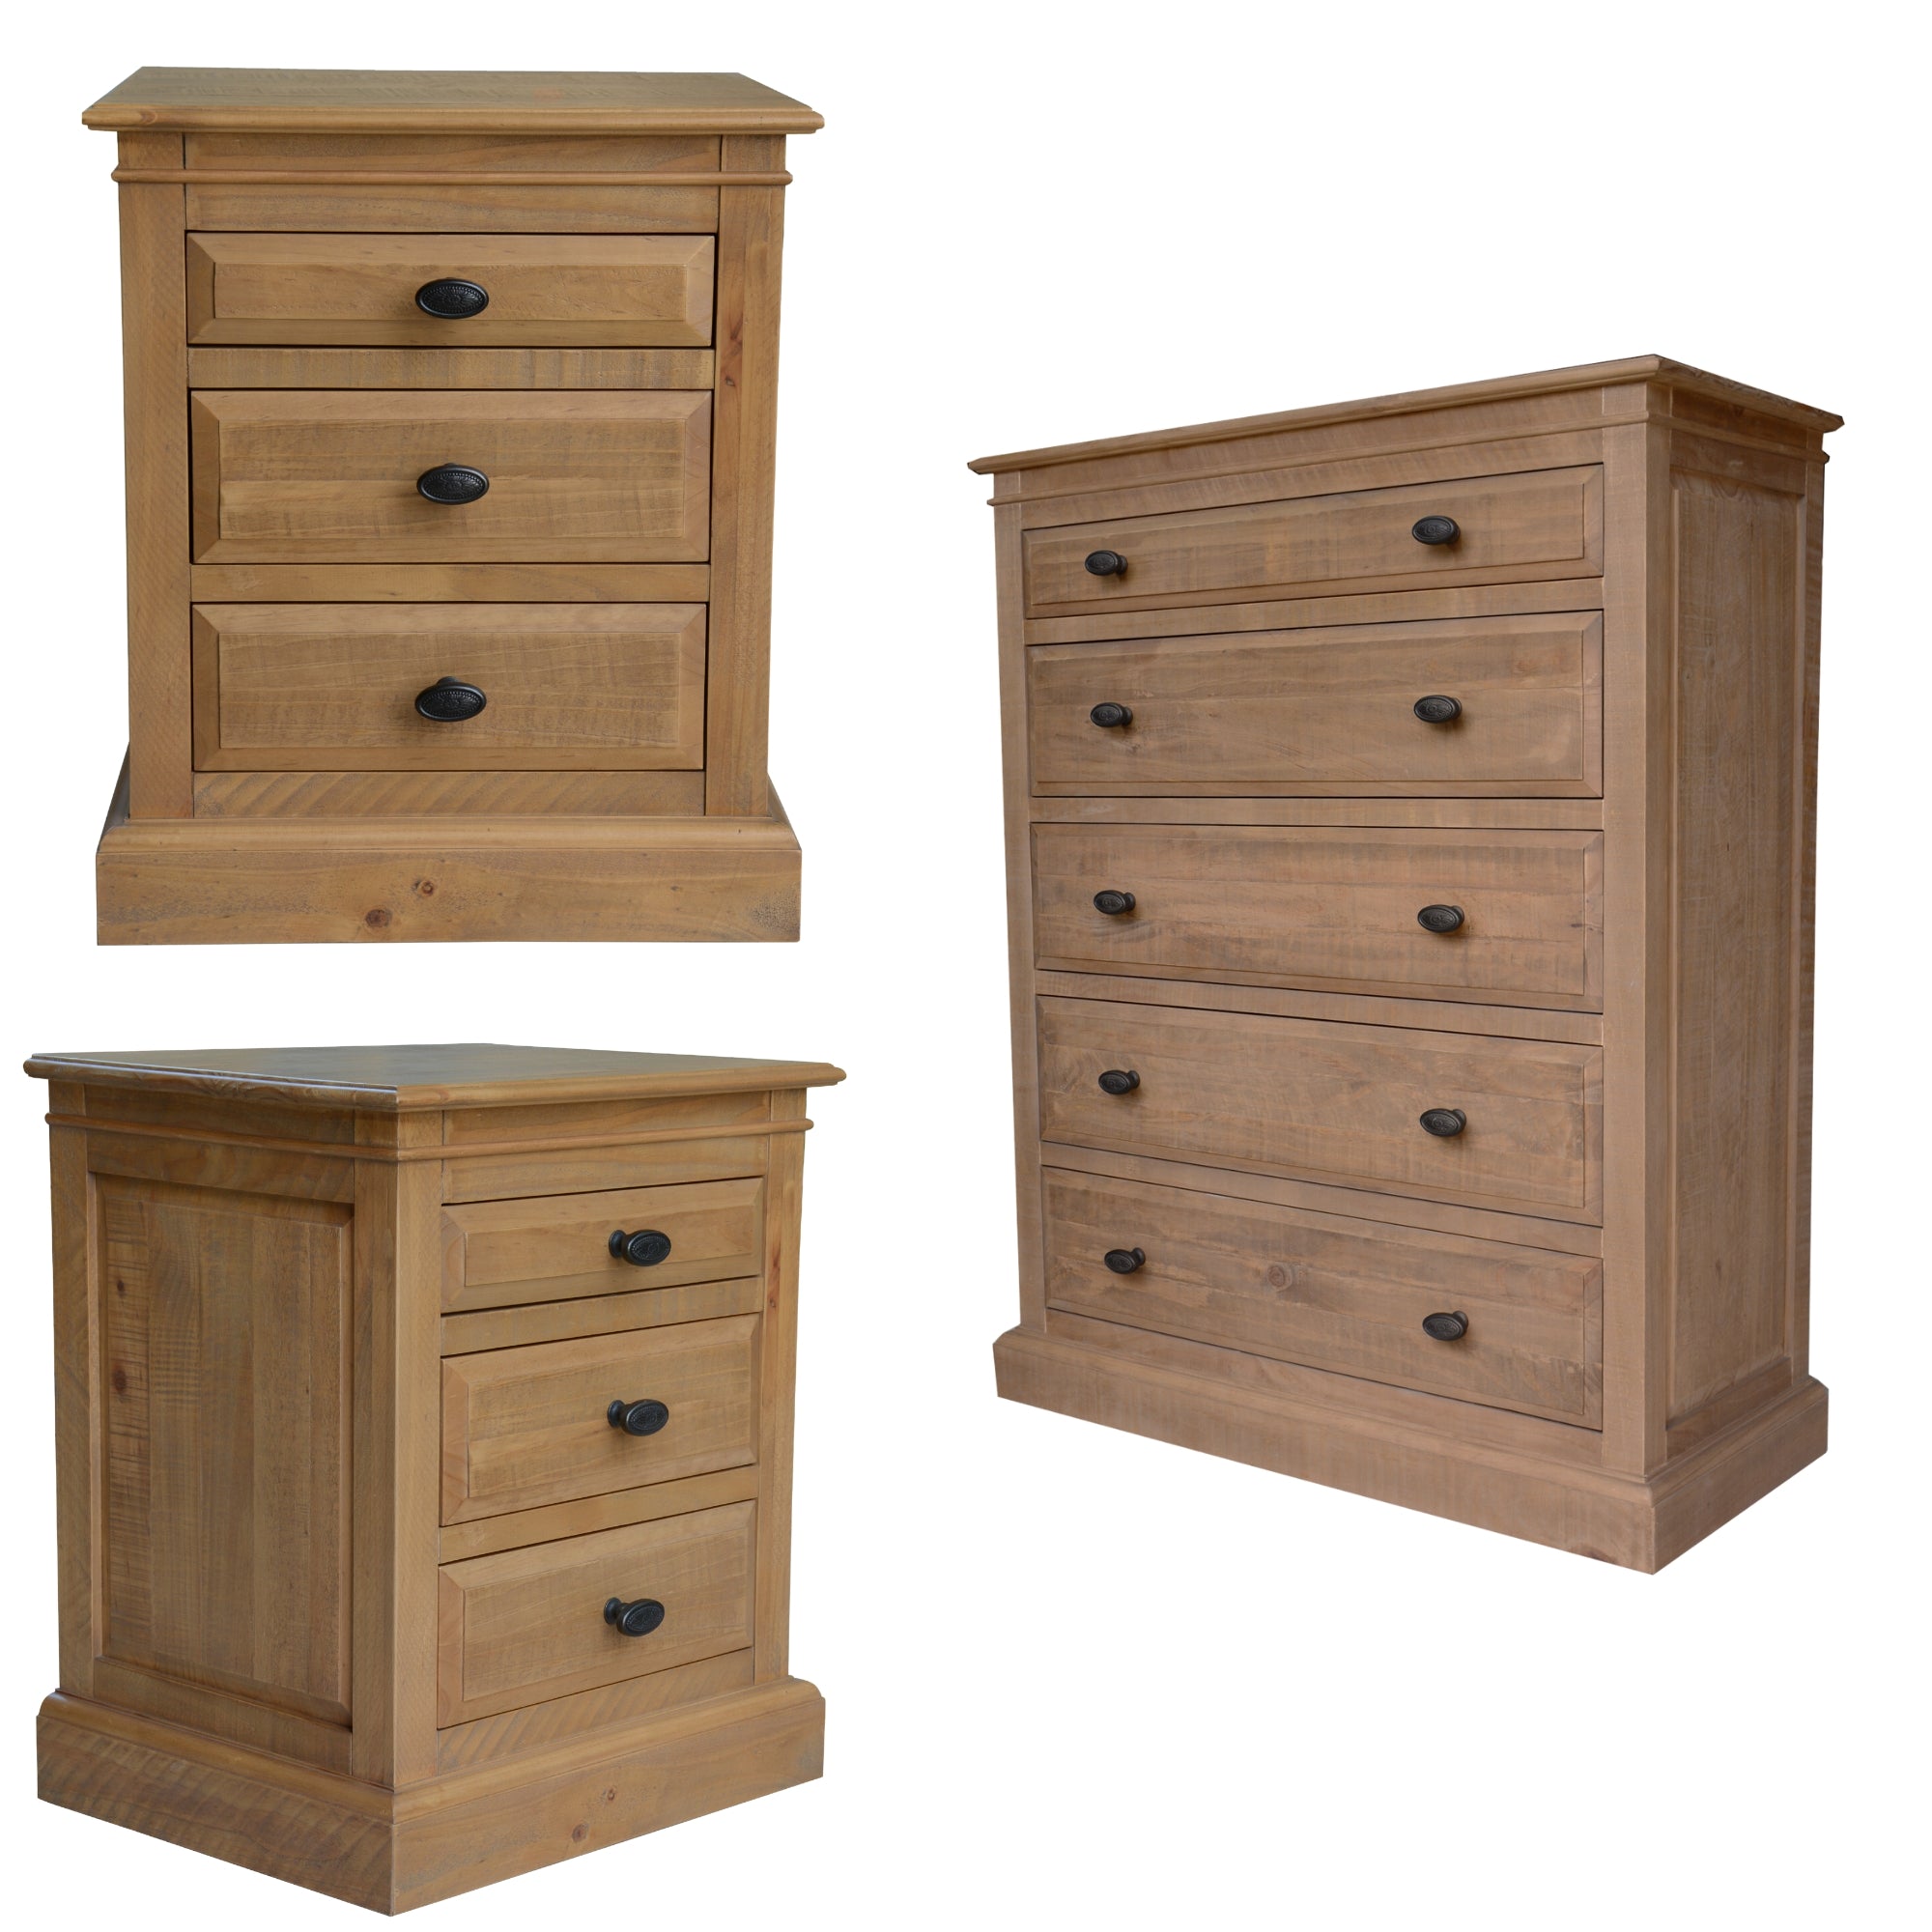 Rustic 3 Drawer Bedside & 5 Drawer Tallboy Set, Solid Pine Wood